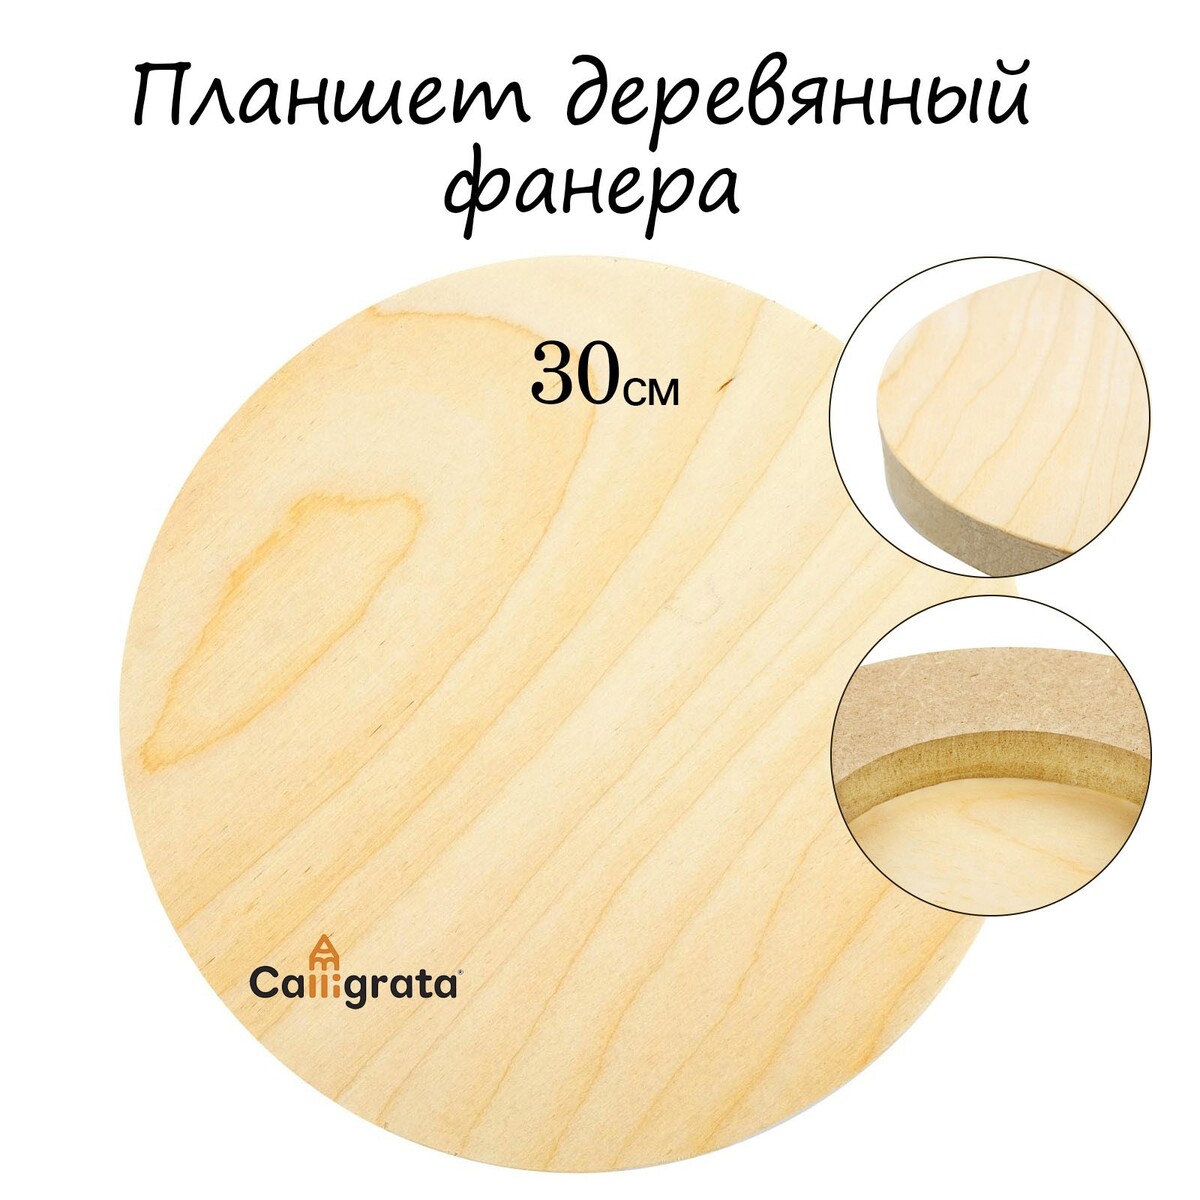 Планшет круглый деревянный фанера d-30 х 2 см, сосна, calligrata планшет деревянный 30 х 40 х 2 см двп